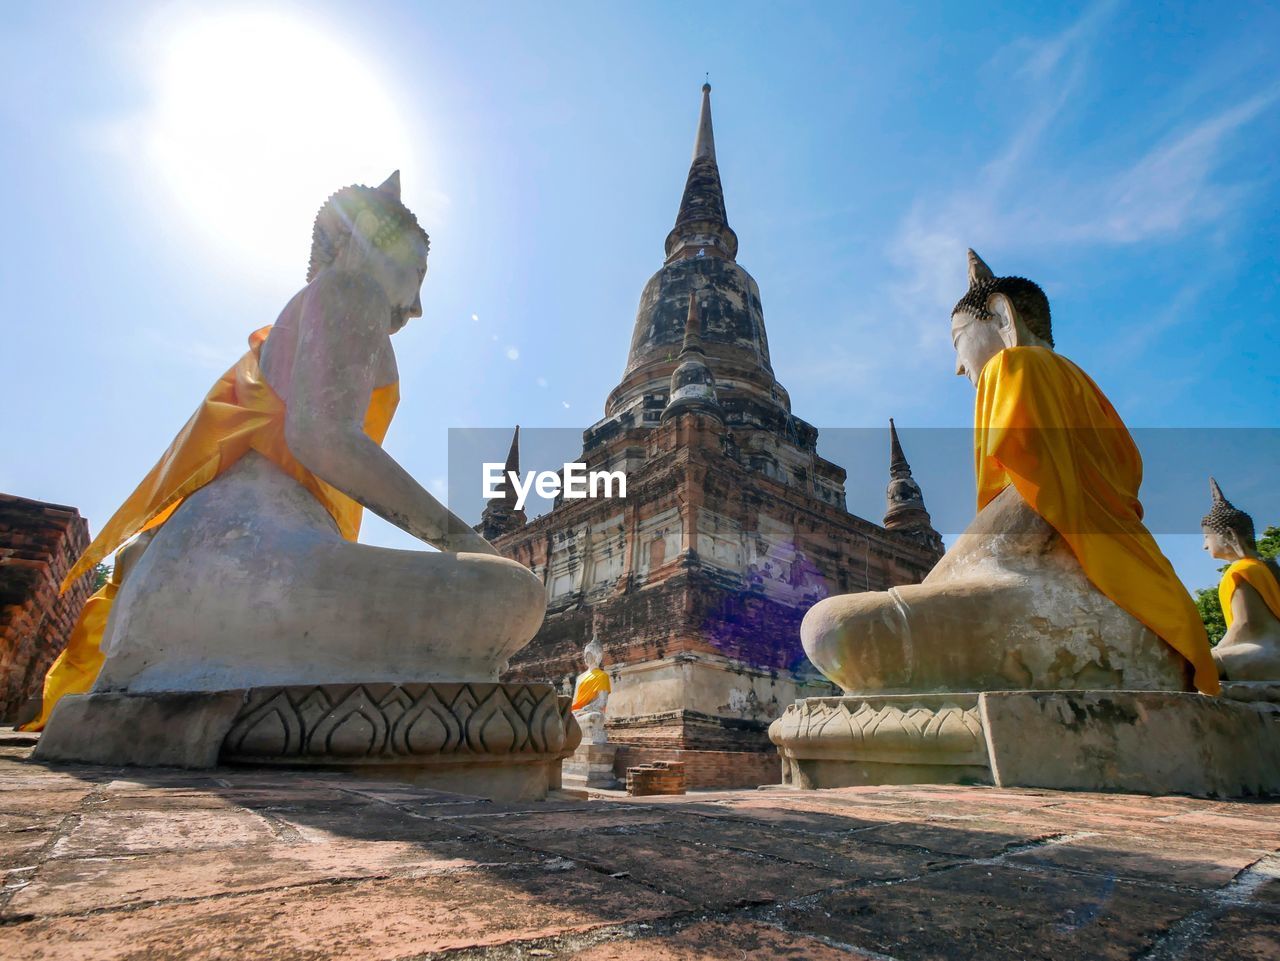 Old temple wat yai chai mongkhon of ayutthaya province